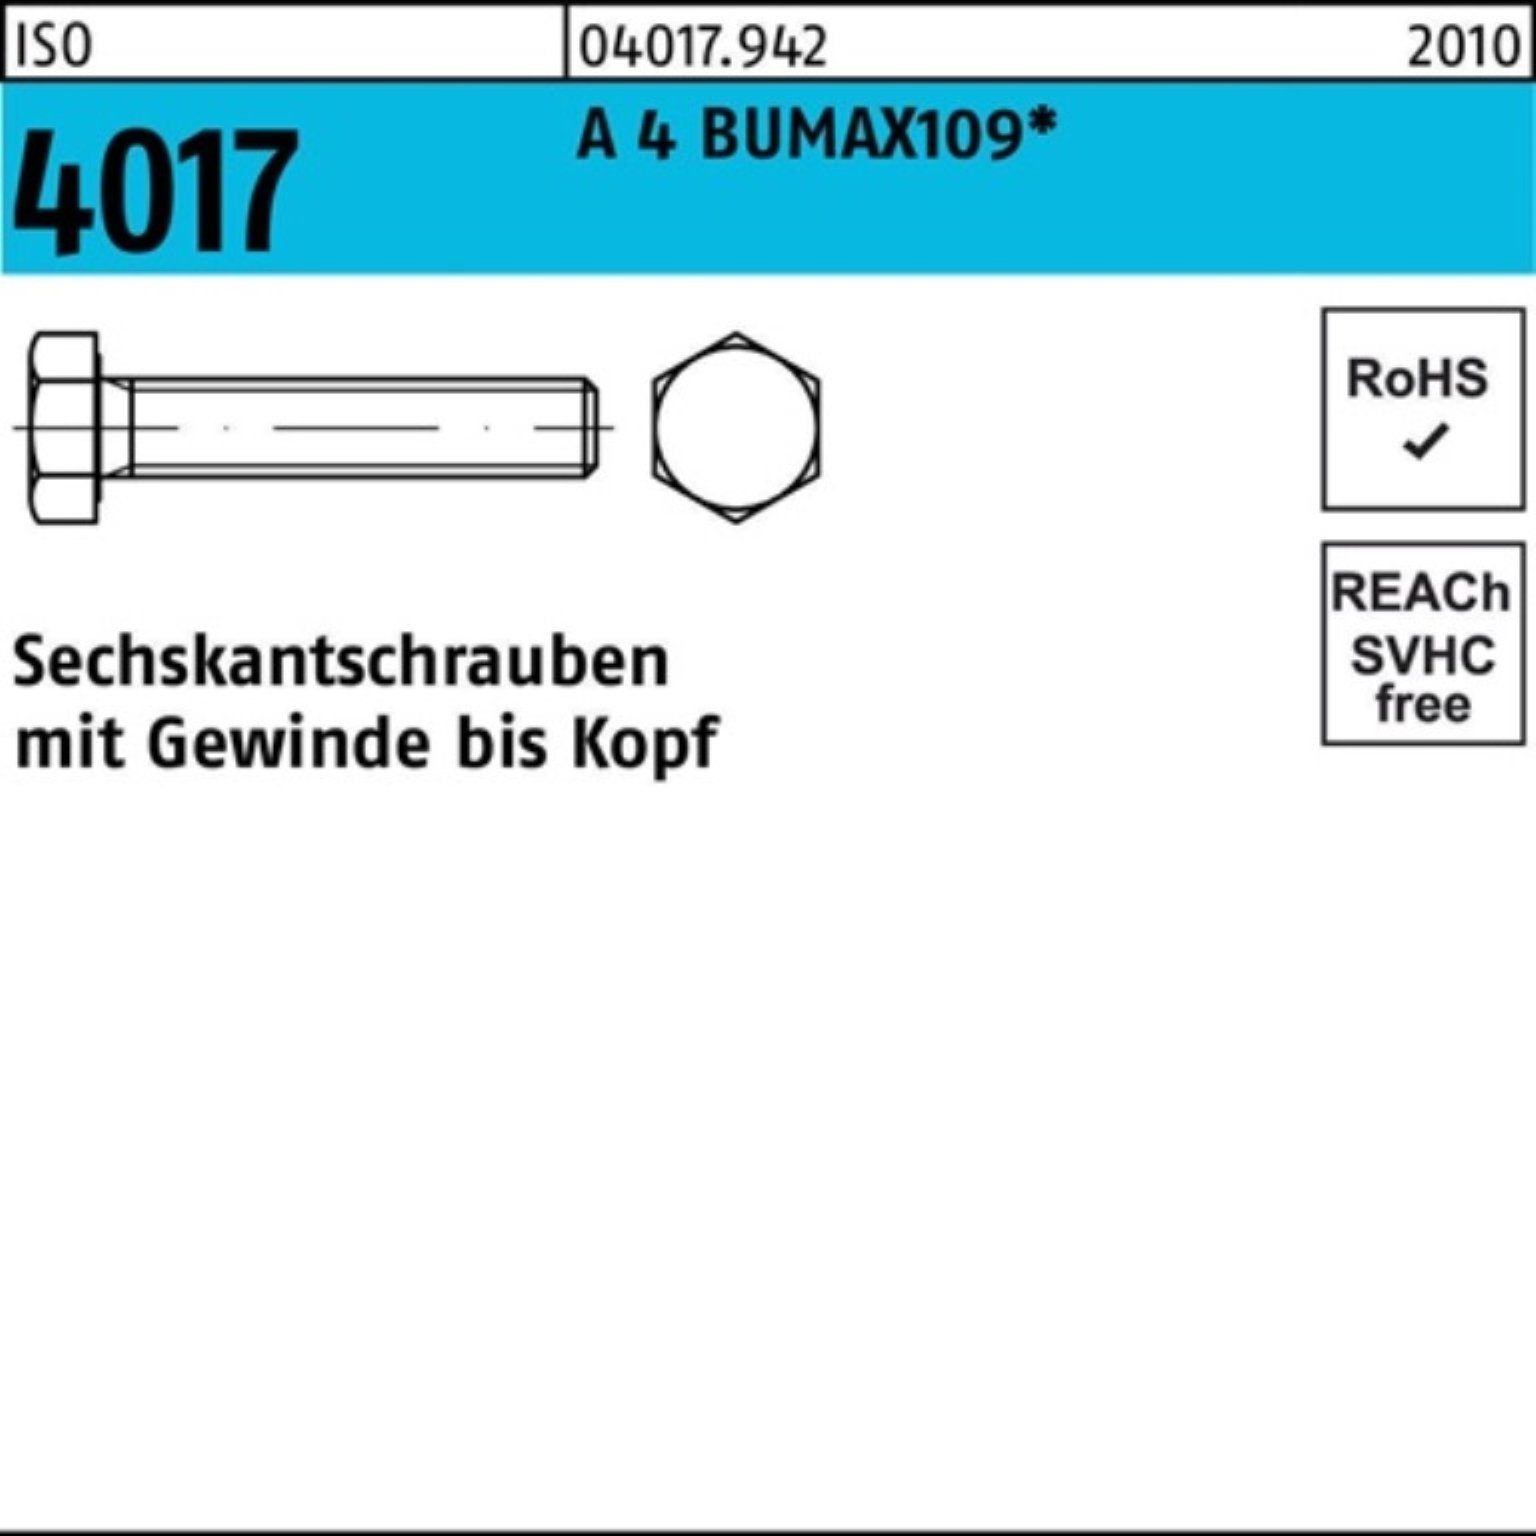 Stüc 100er A 50 Bufab Sechskantschraube Pack 30 BUMAX109 4 Sechskantschraube M10x 4017 ISO VG